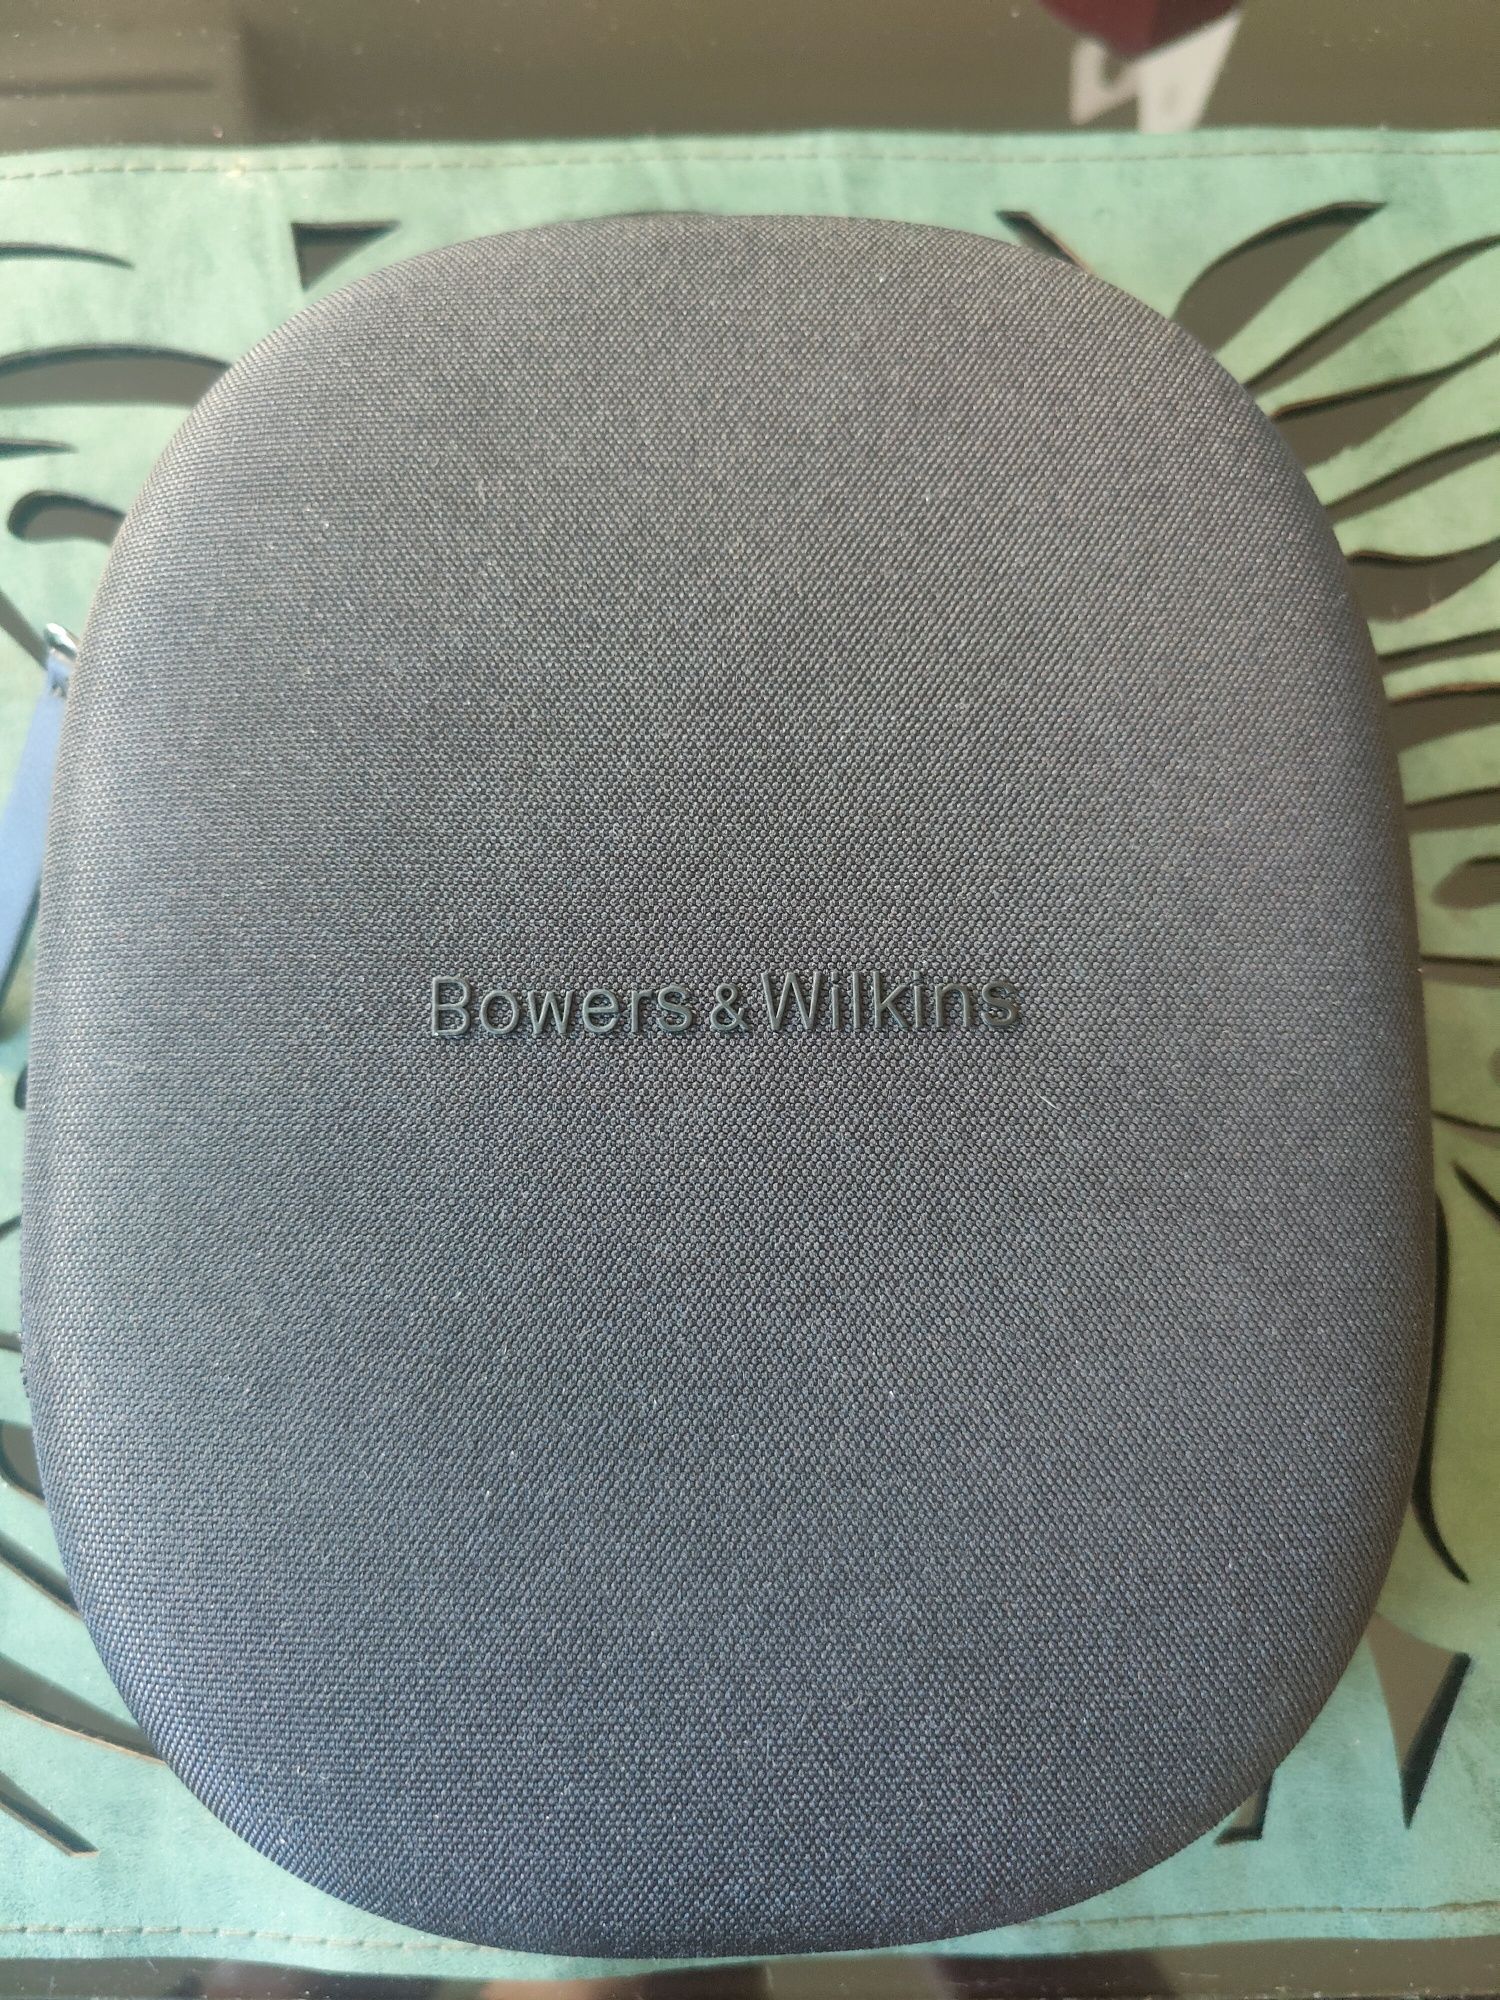 Słuchawki bower & wilkins px8